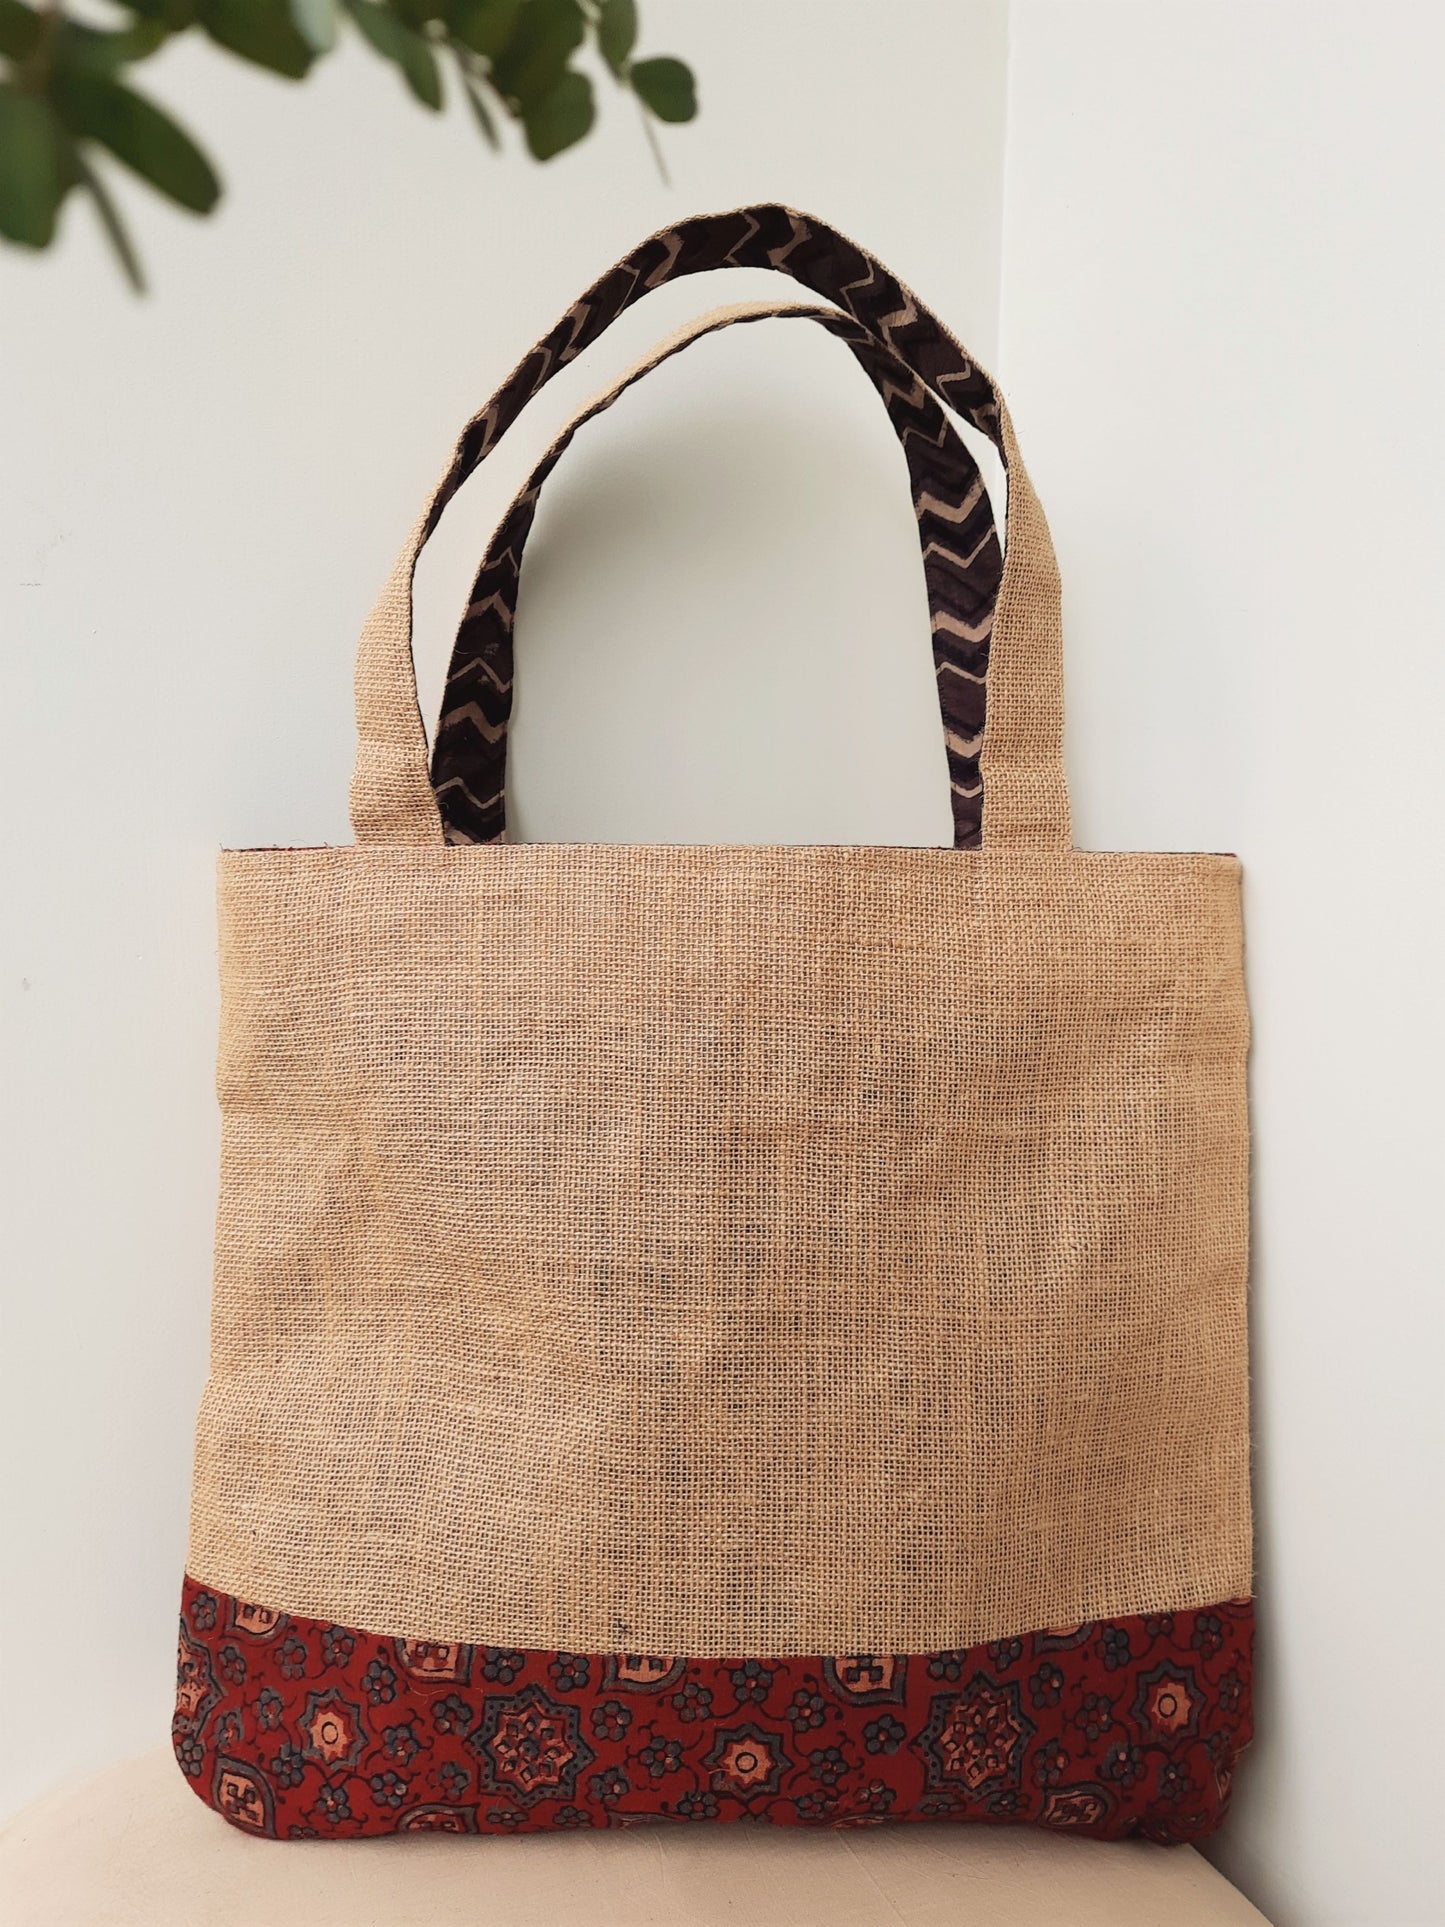 Jute tote bag, Jute & ajrakh hand block print tote bag, Fabric tote bag, Fabric handbag, Organic cotton handbag, Ajrakh prints jute bag